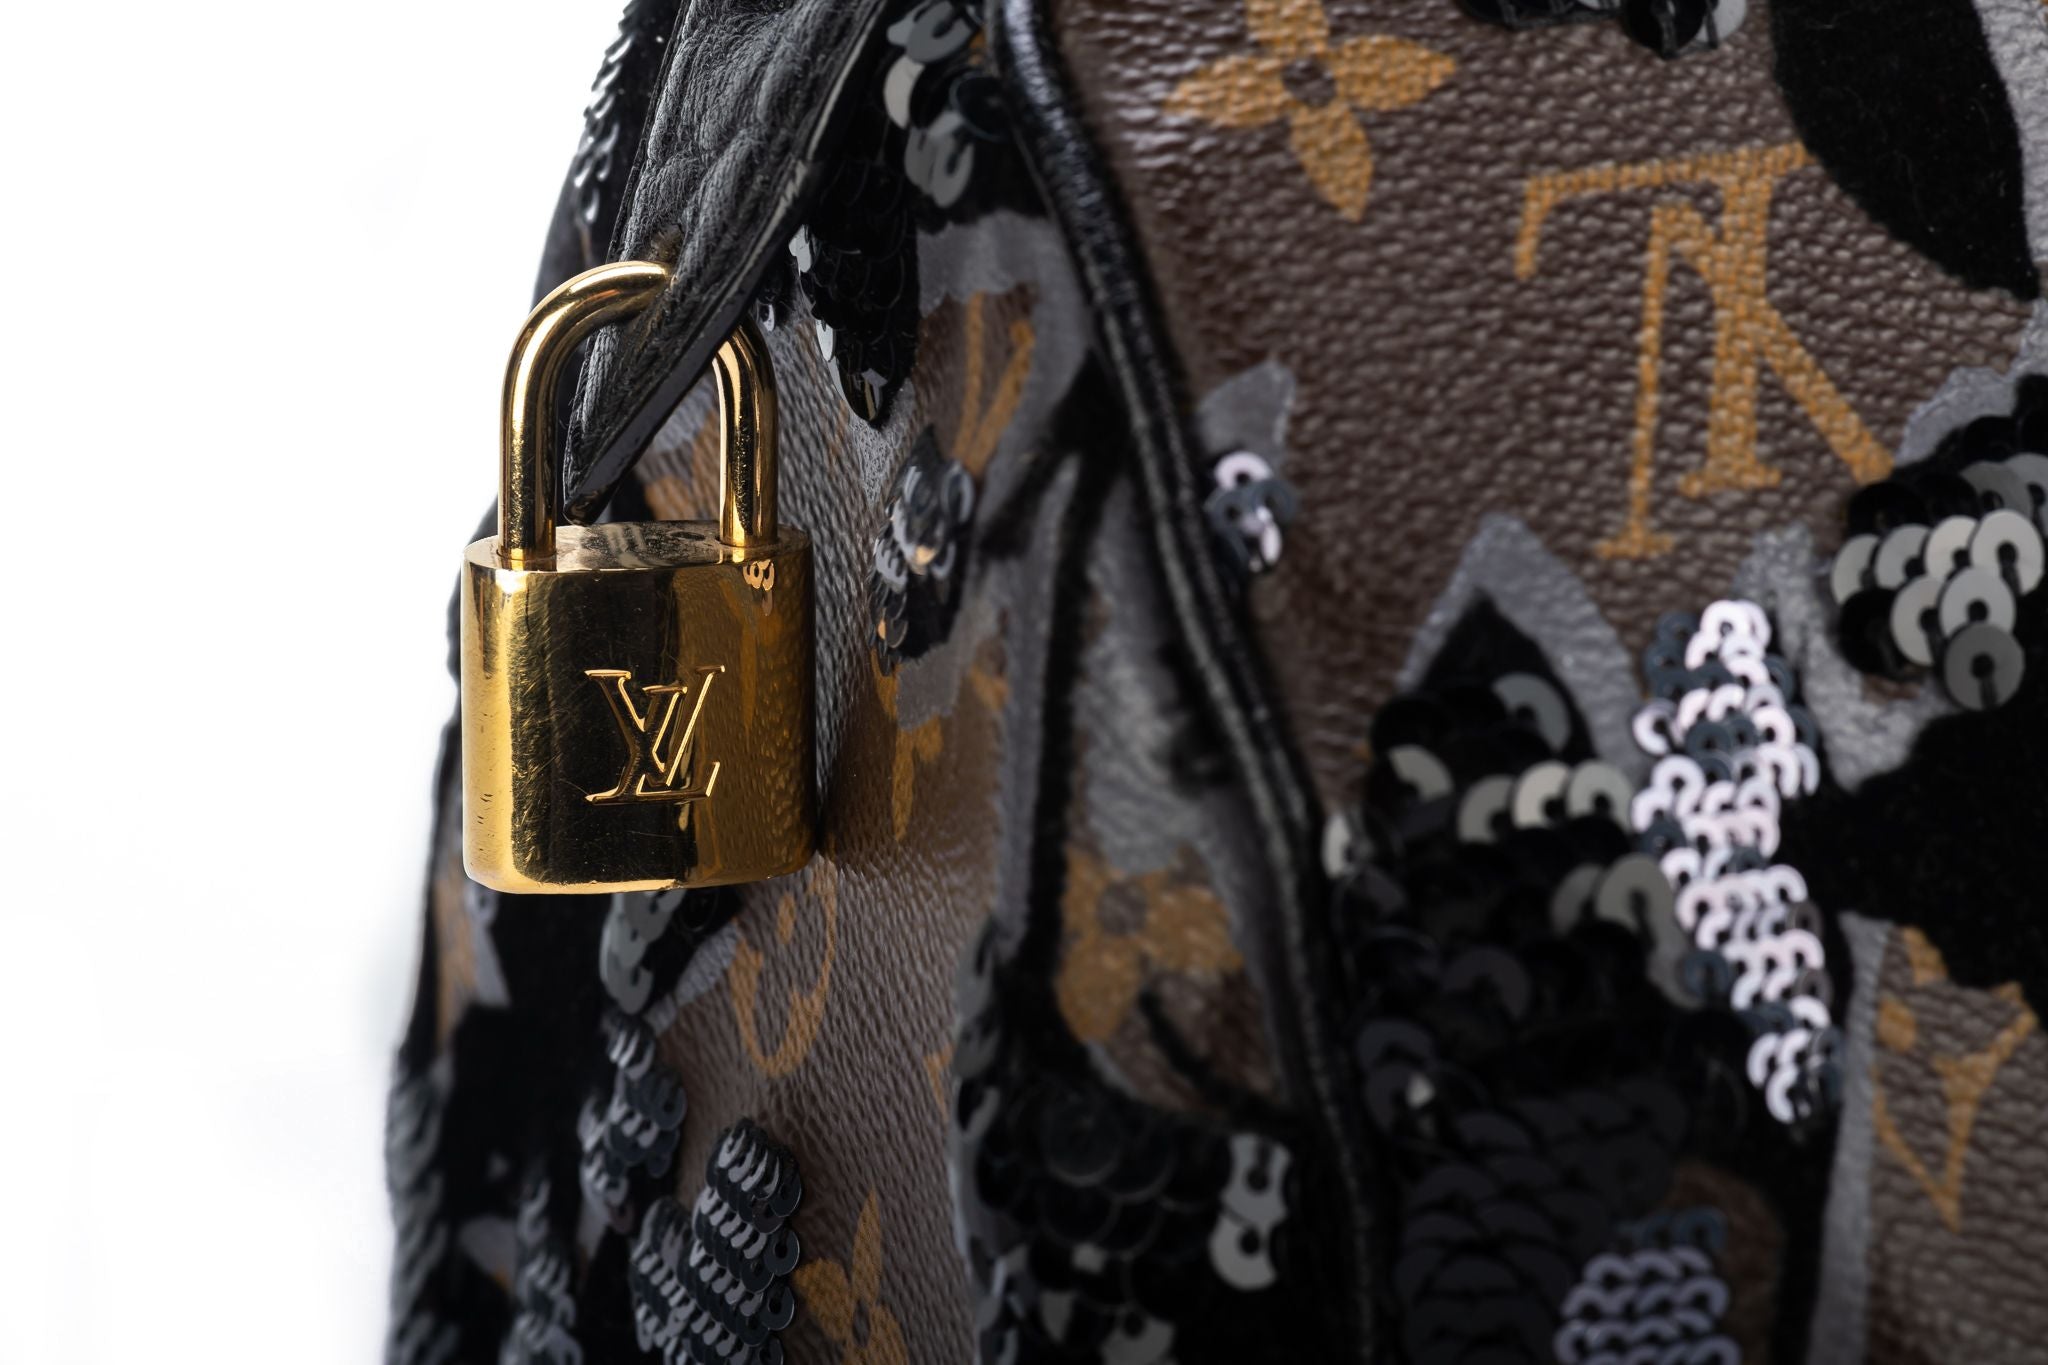 Louis Vuitton Sequin Bag, Louis Vuitton Sequin Bag